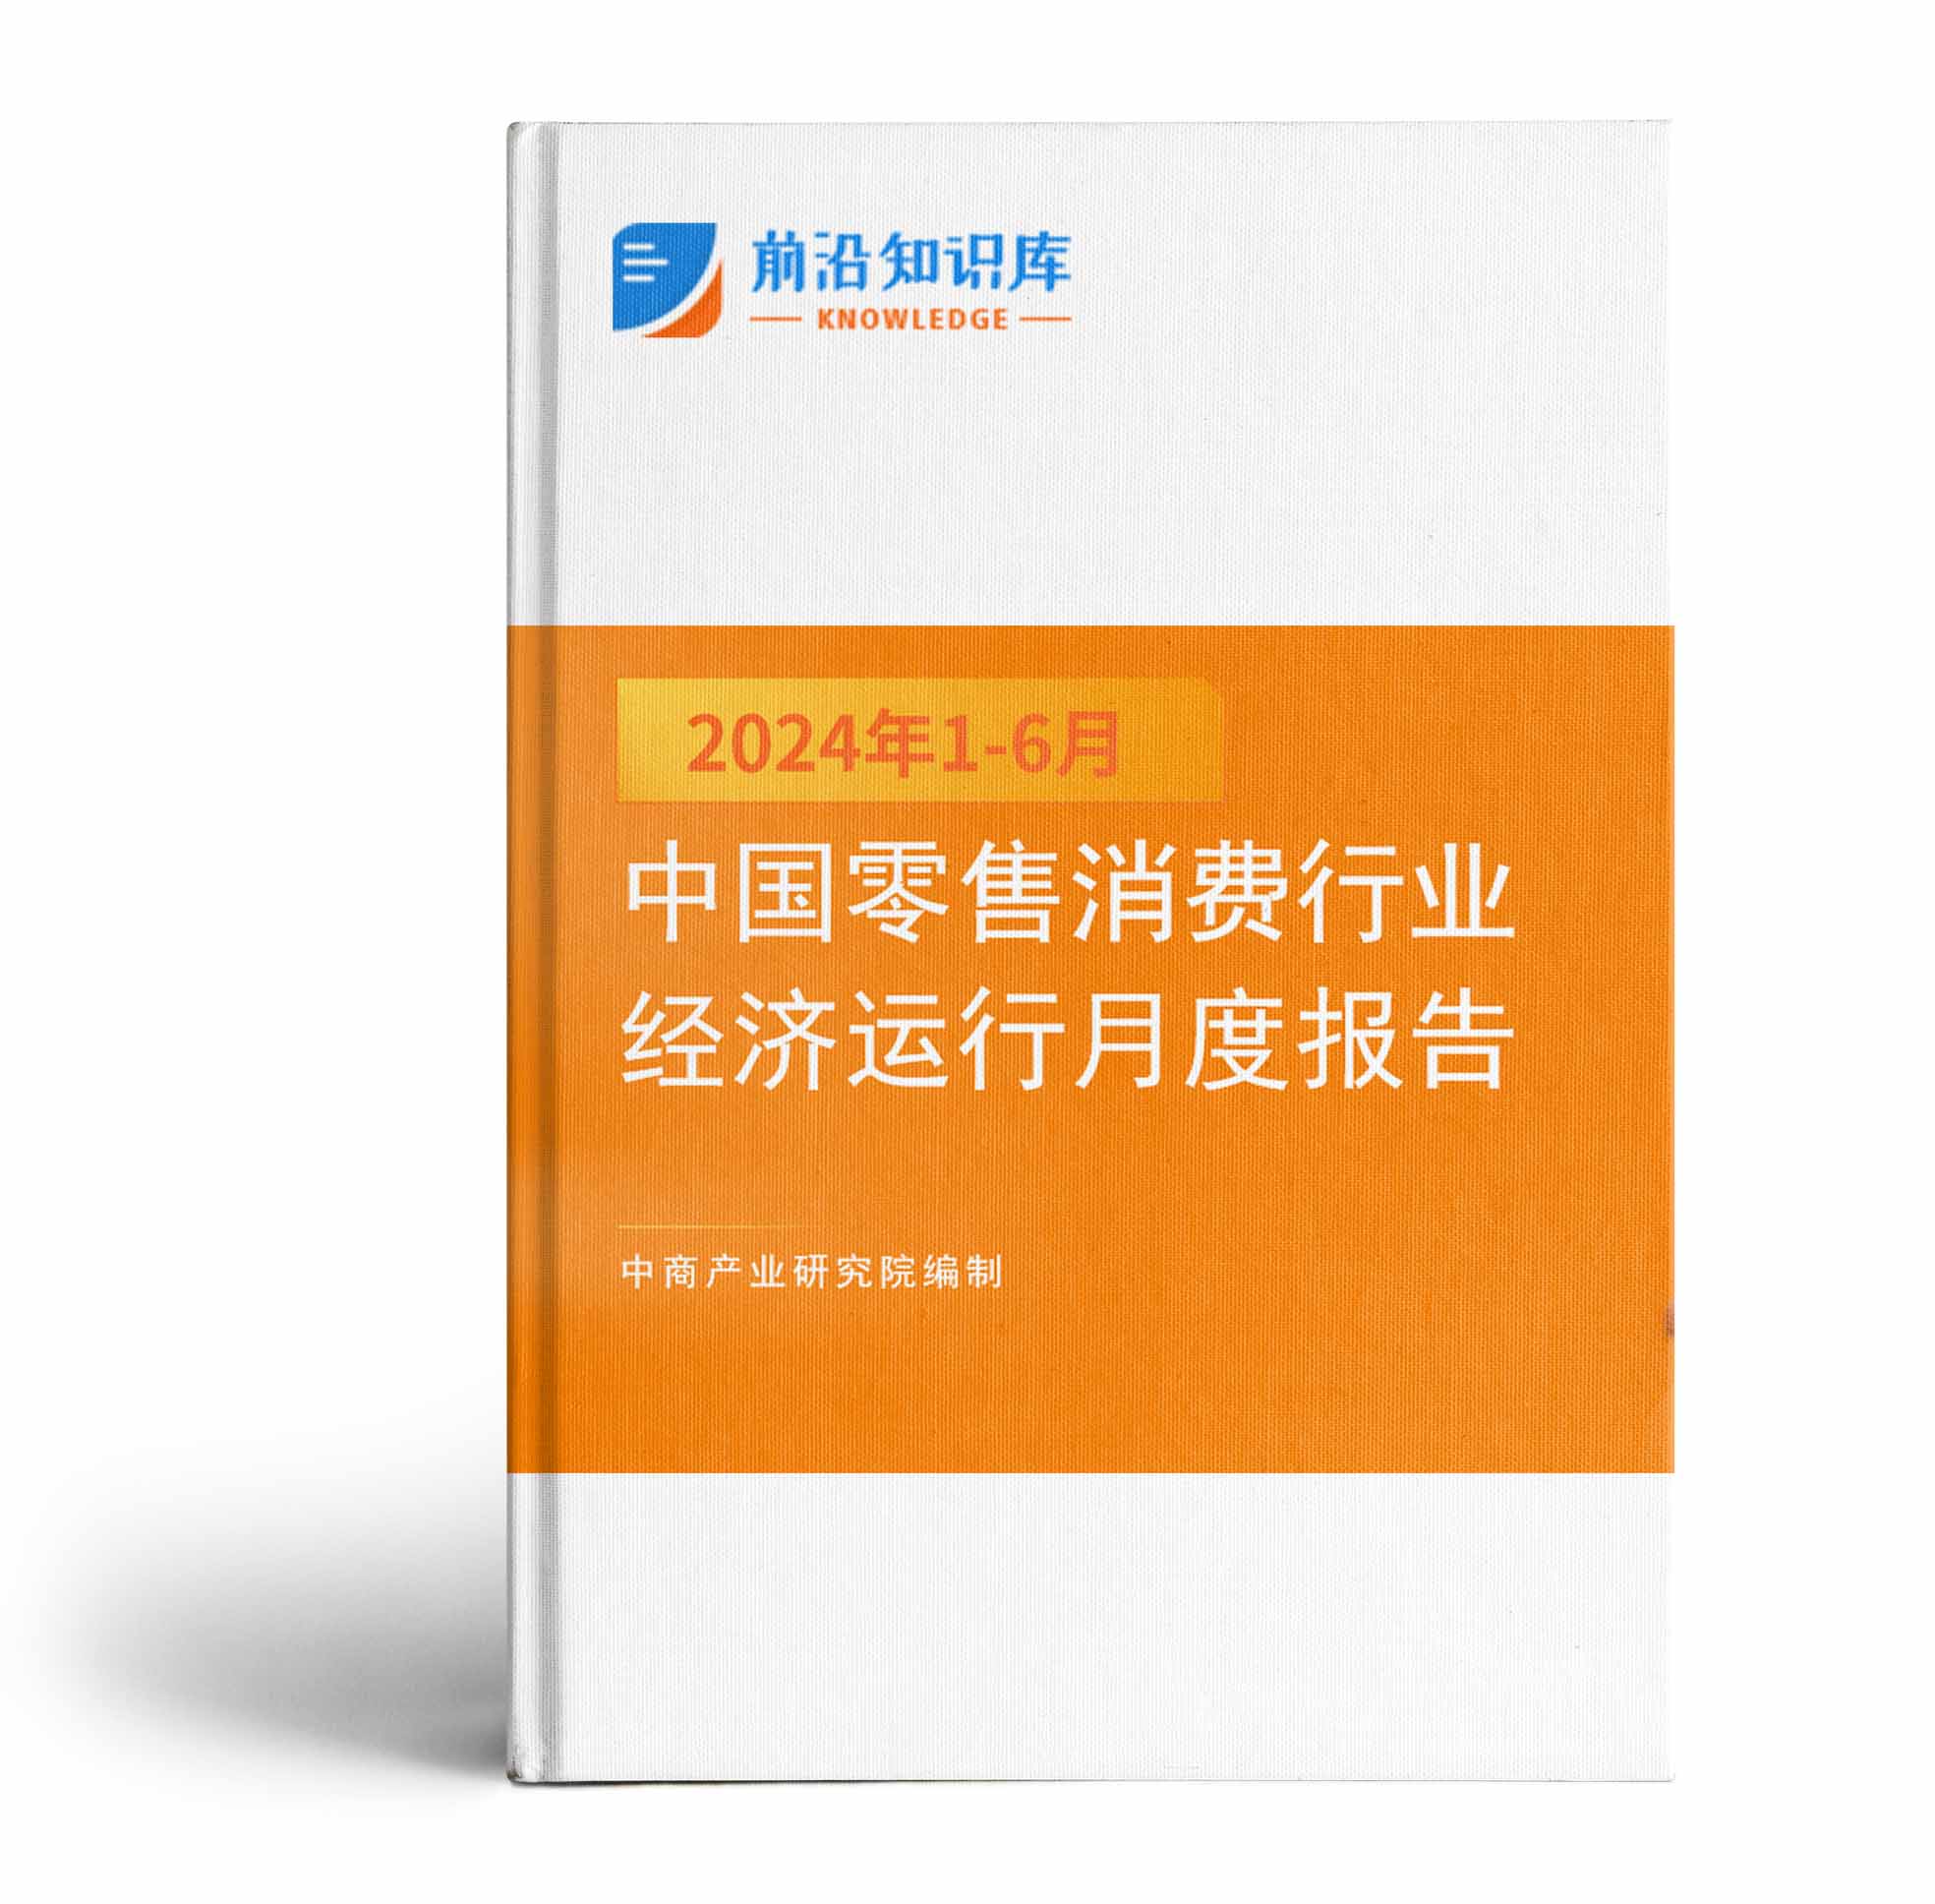 中国零售消费行业投资决策参考(2024年1-6月)